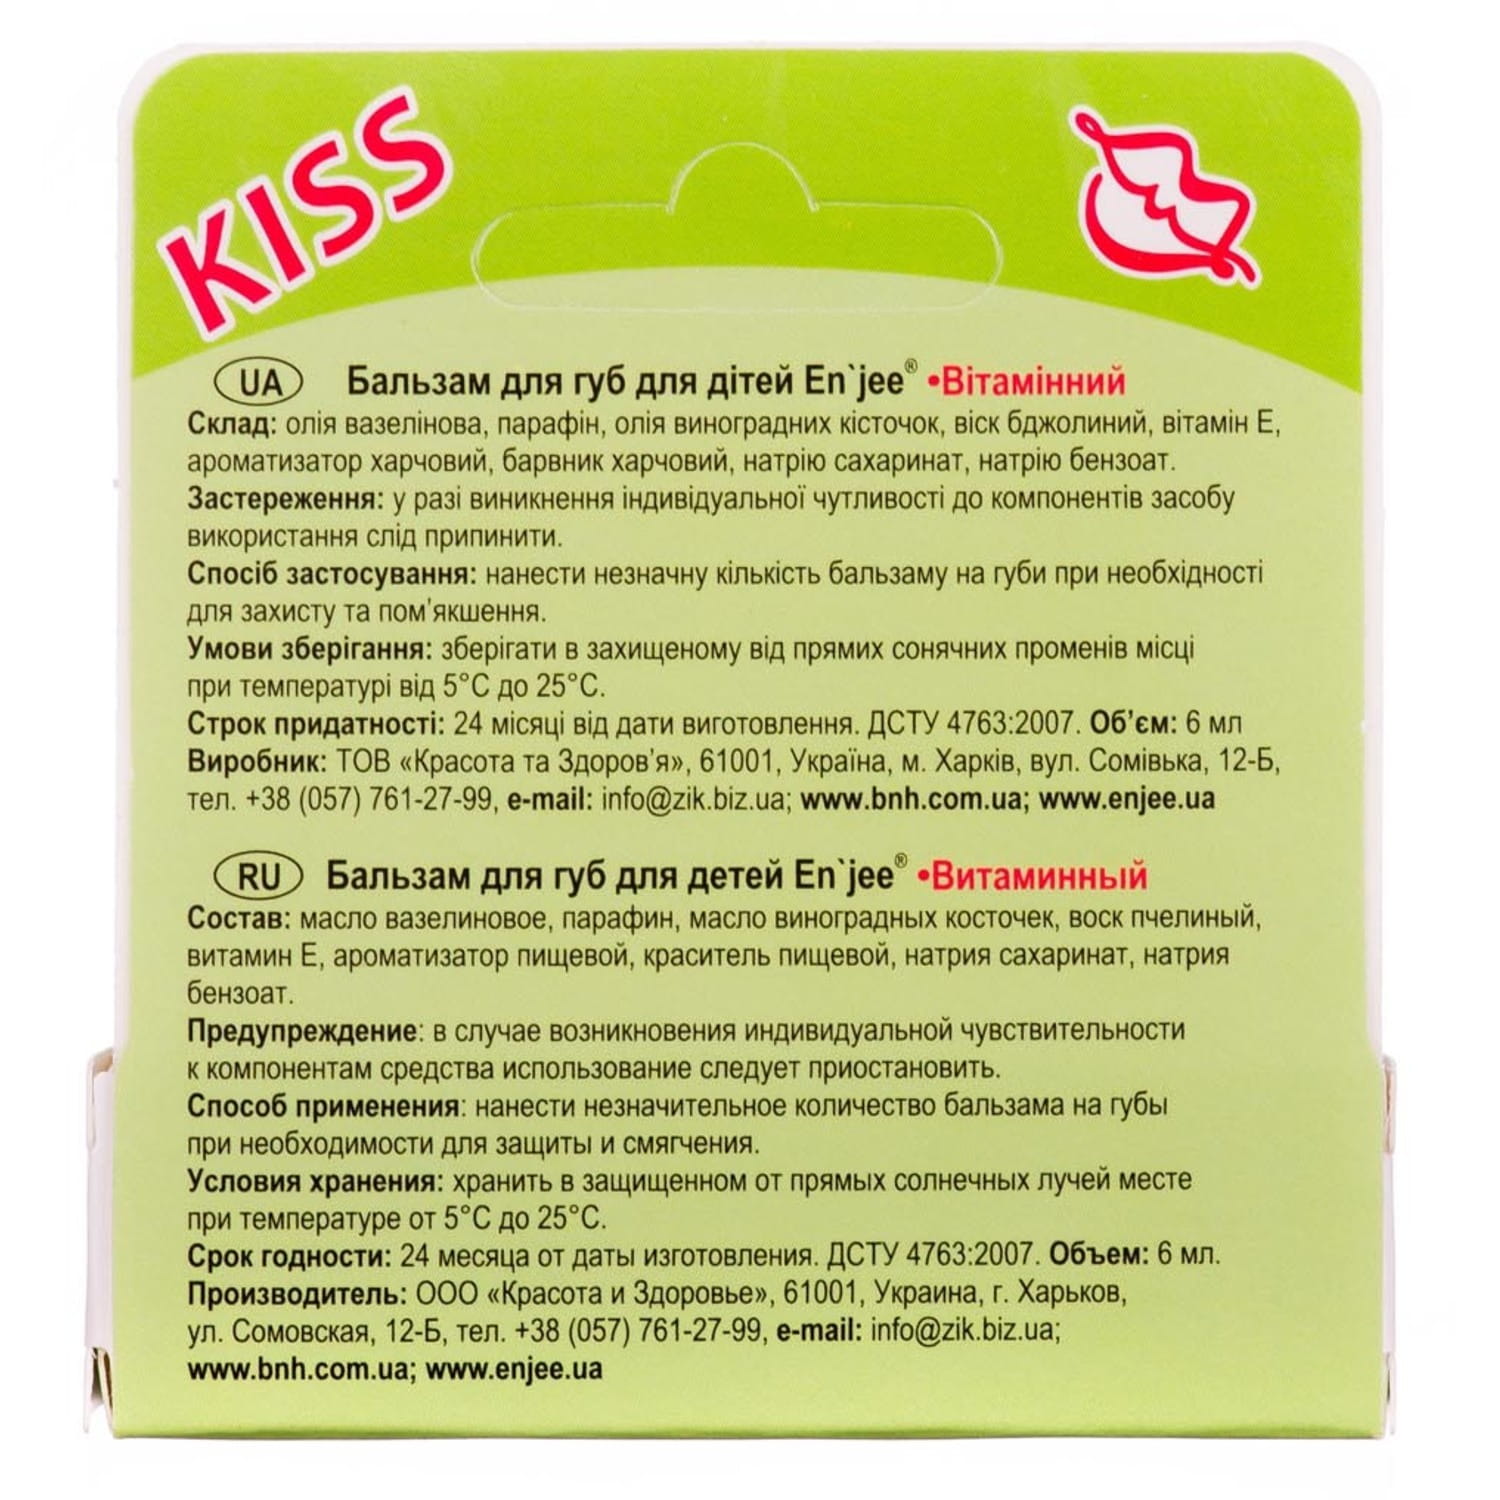 Бальзам для губ дитячий Enjee KISS Вітамінний роликовий 6 мл - фото 3